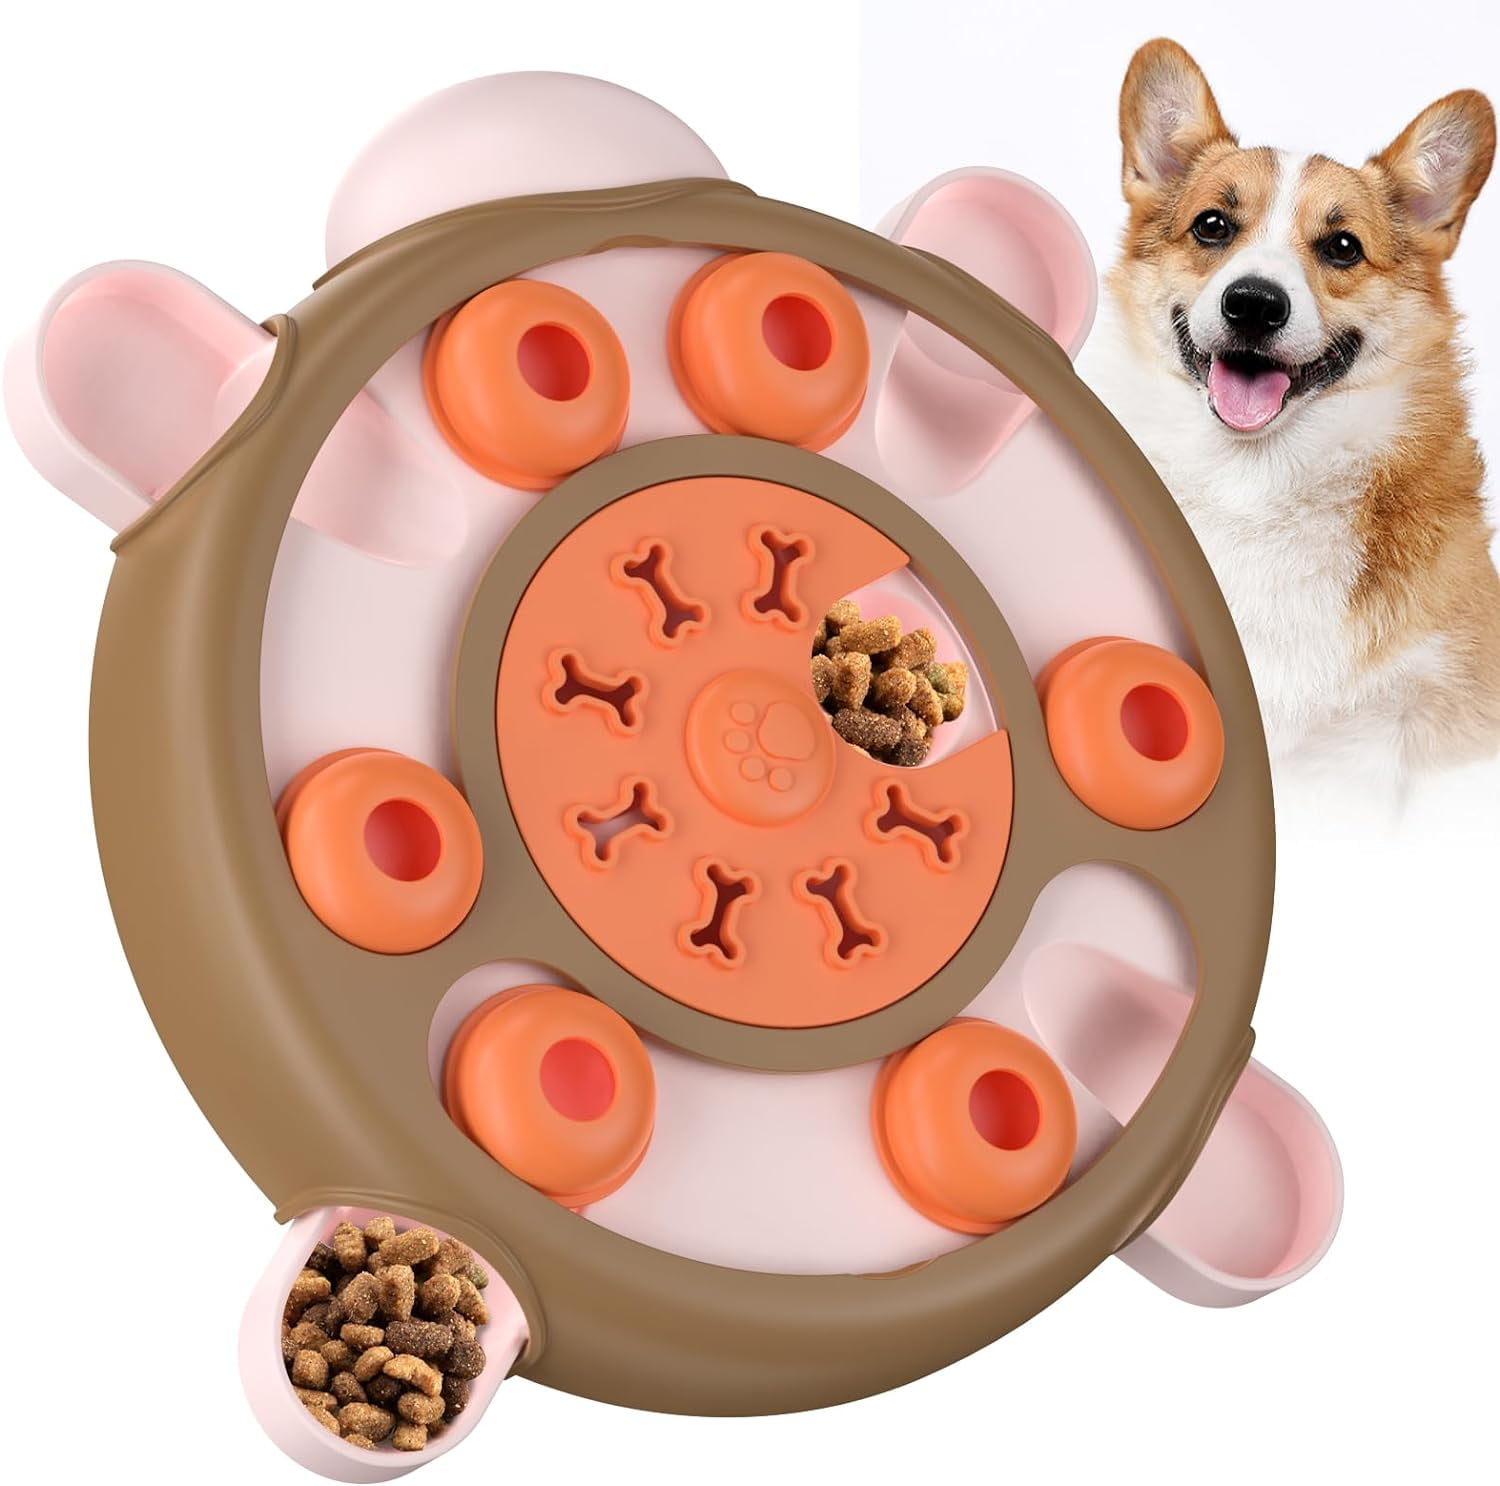 Игрушка для собак SkyRus Tortoise Puzzle Toy, интерактивная, коричнево-оранжевая